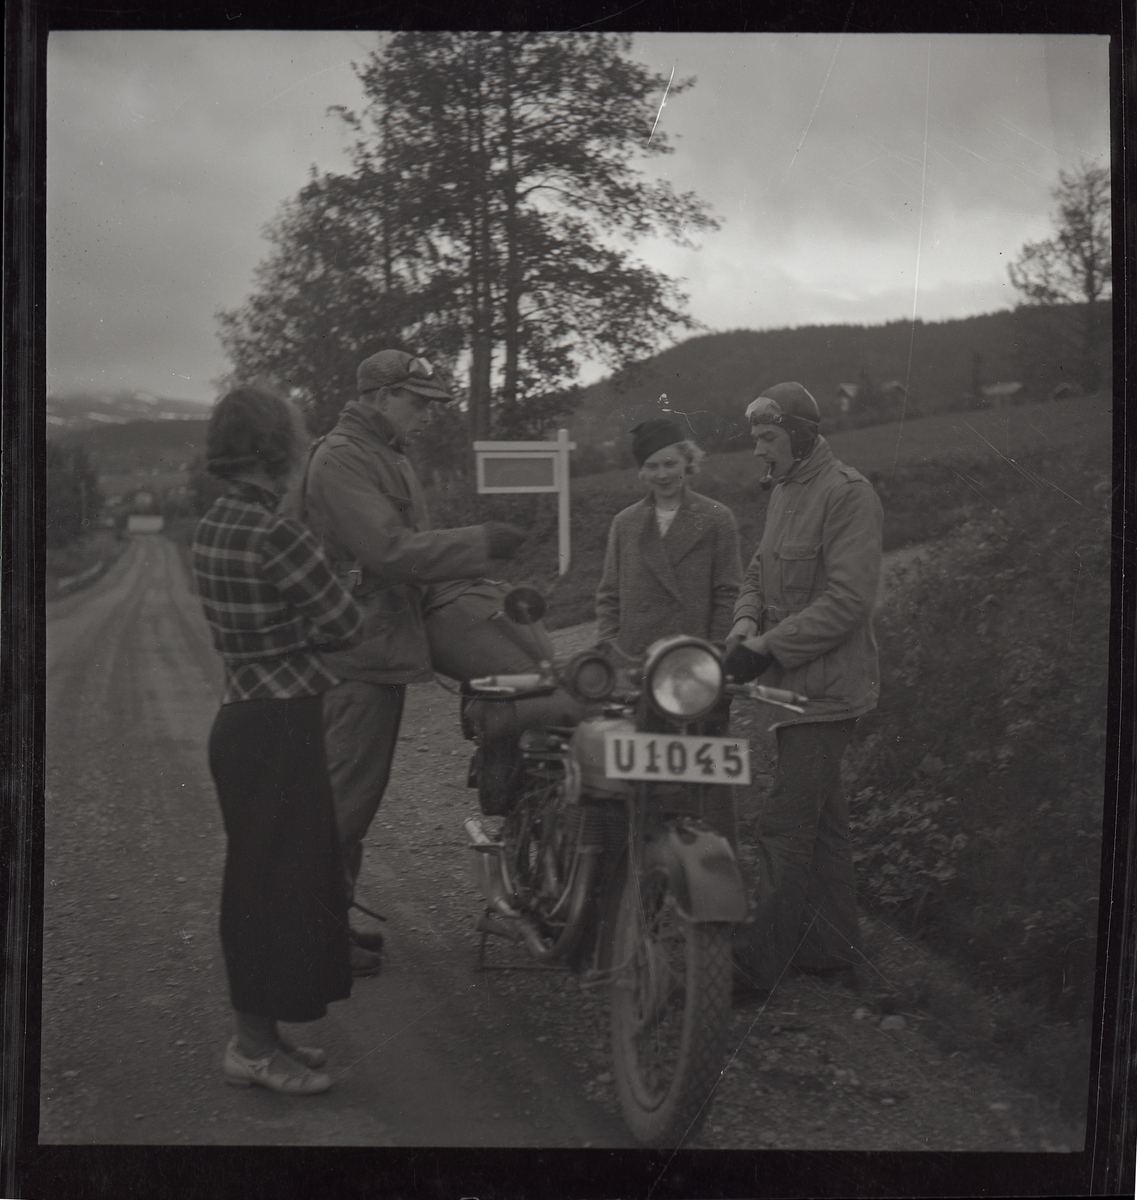 Två kvinnor beundrar en motorcykel och de två "knuttarna".